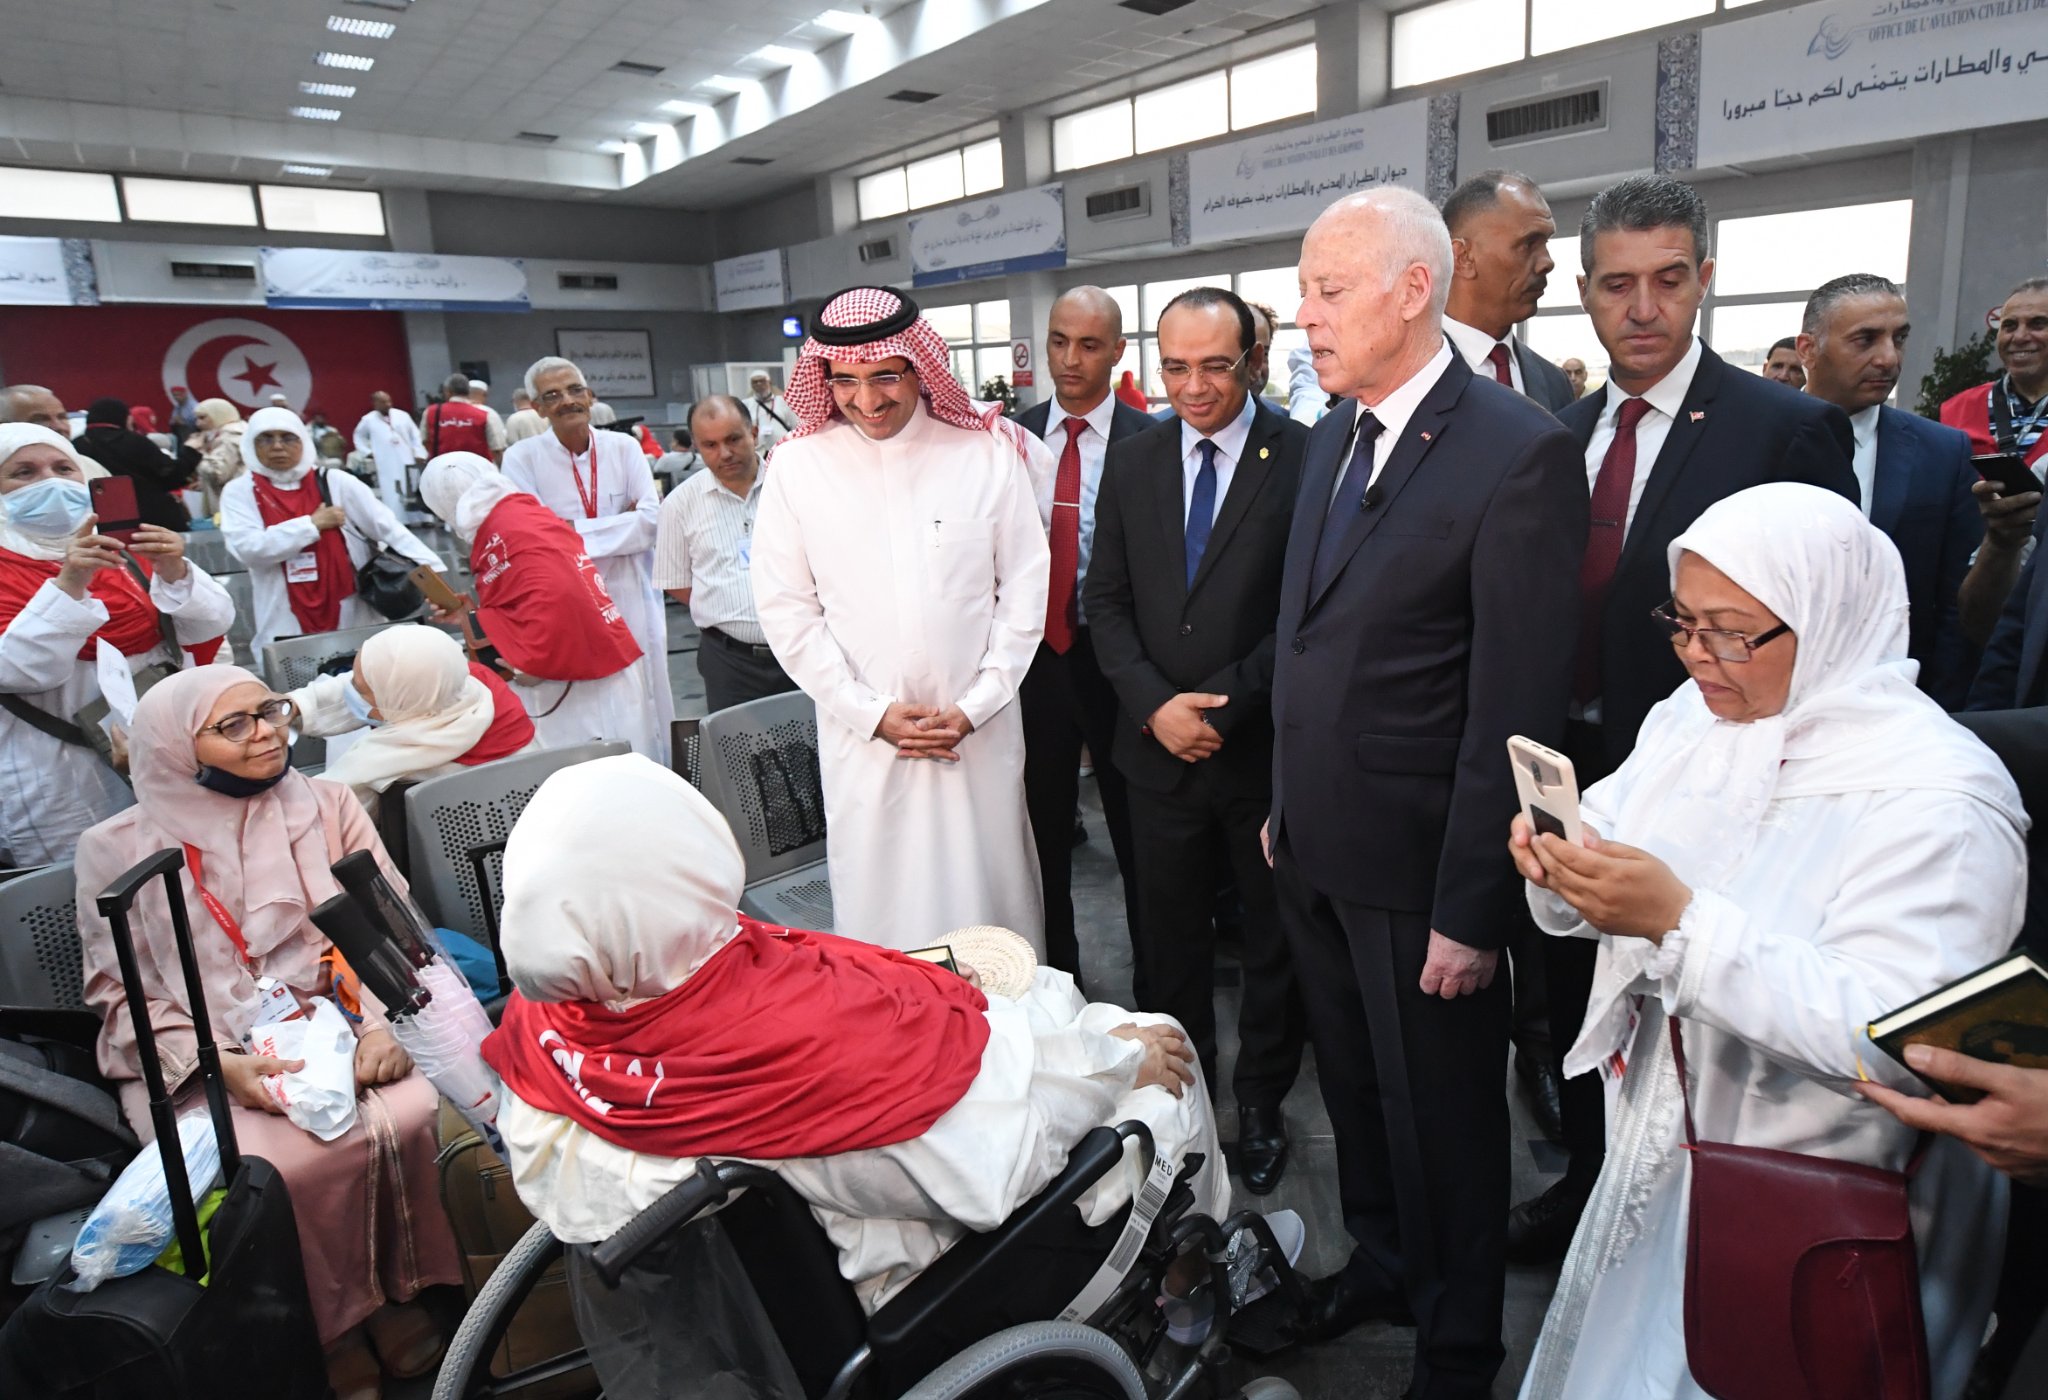 رئيس تونس يودع الحجاج في مطار قرطاج